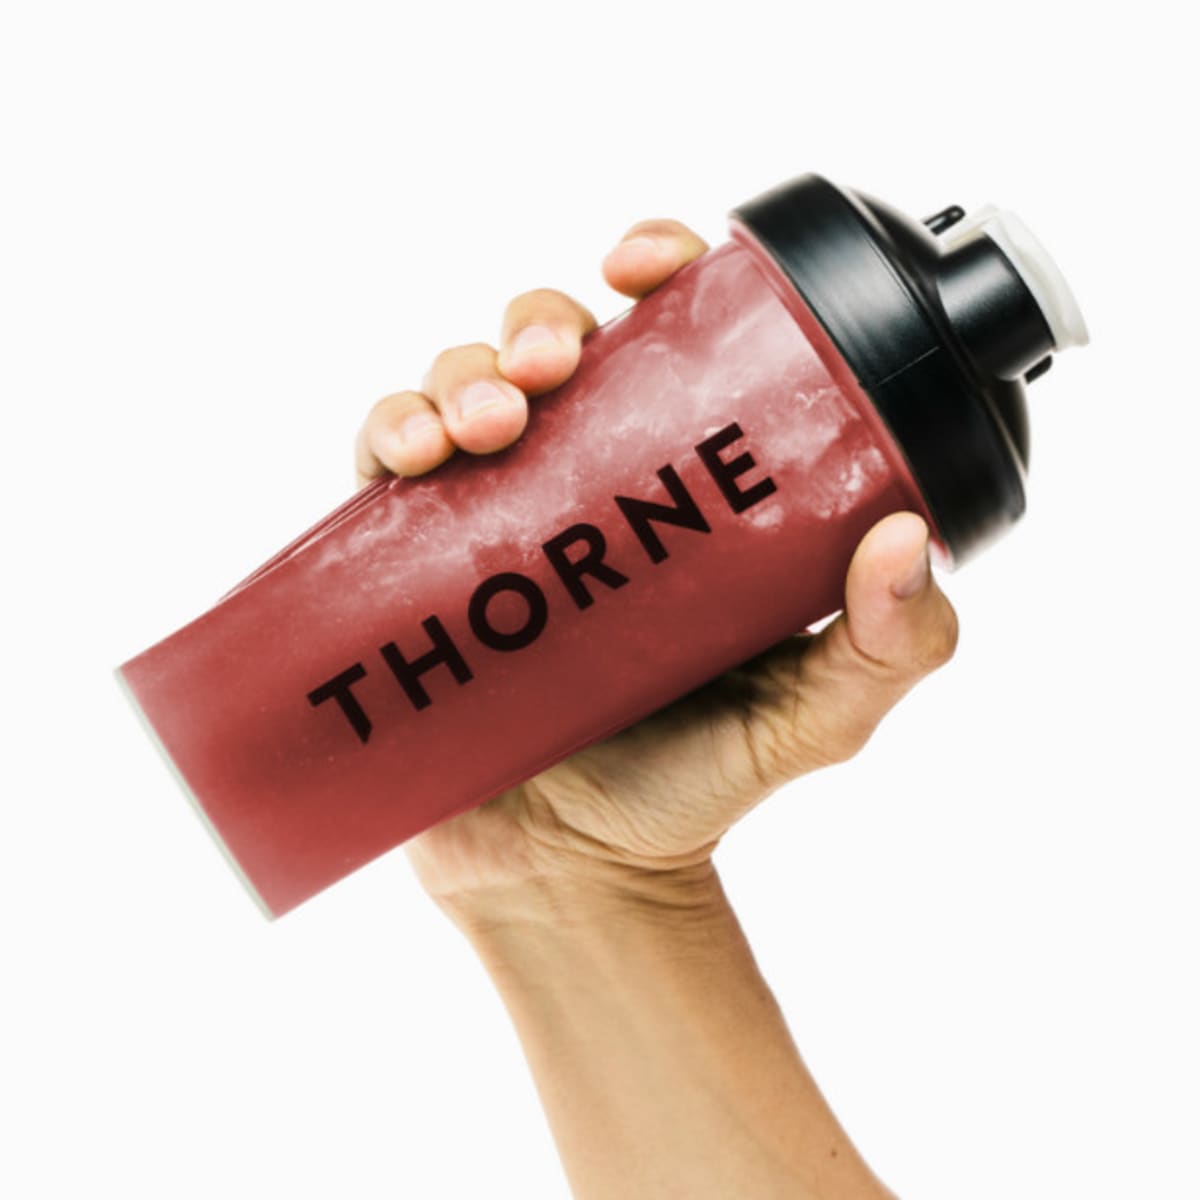 Thorne Shaker Bottle 20 oz. & Reviews